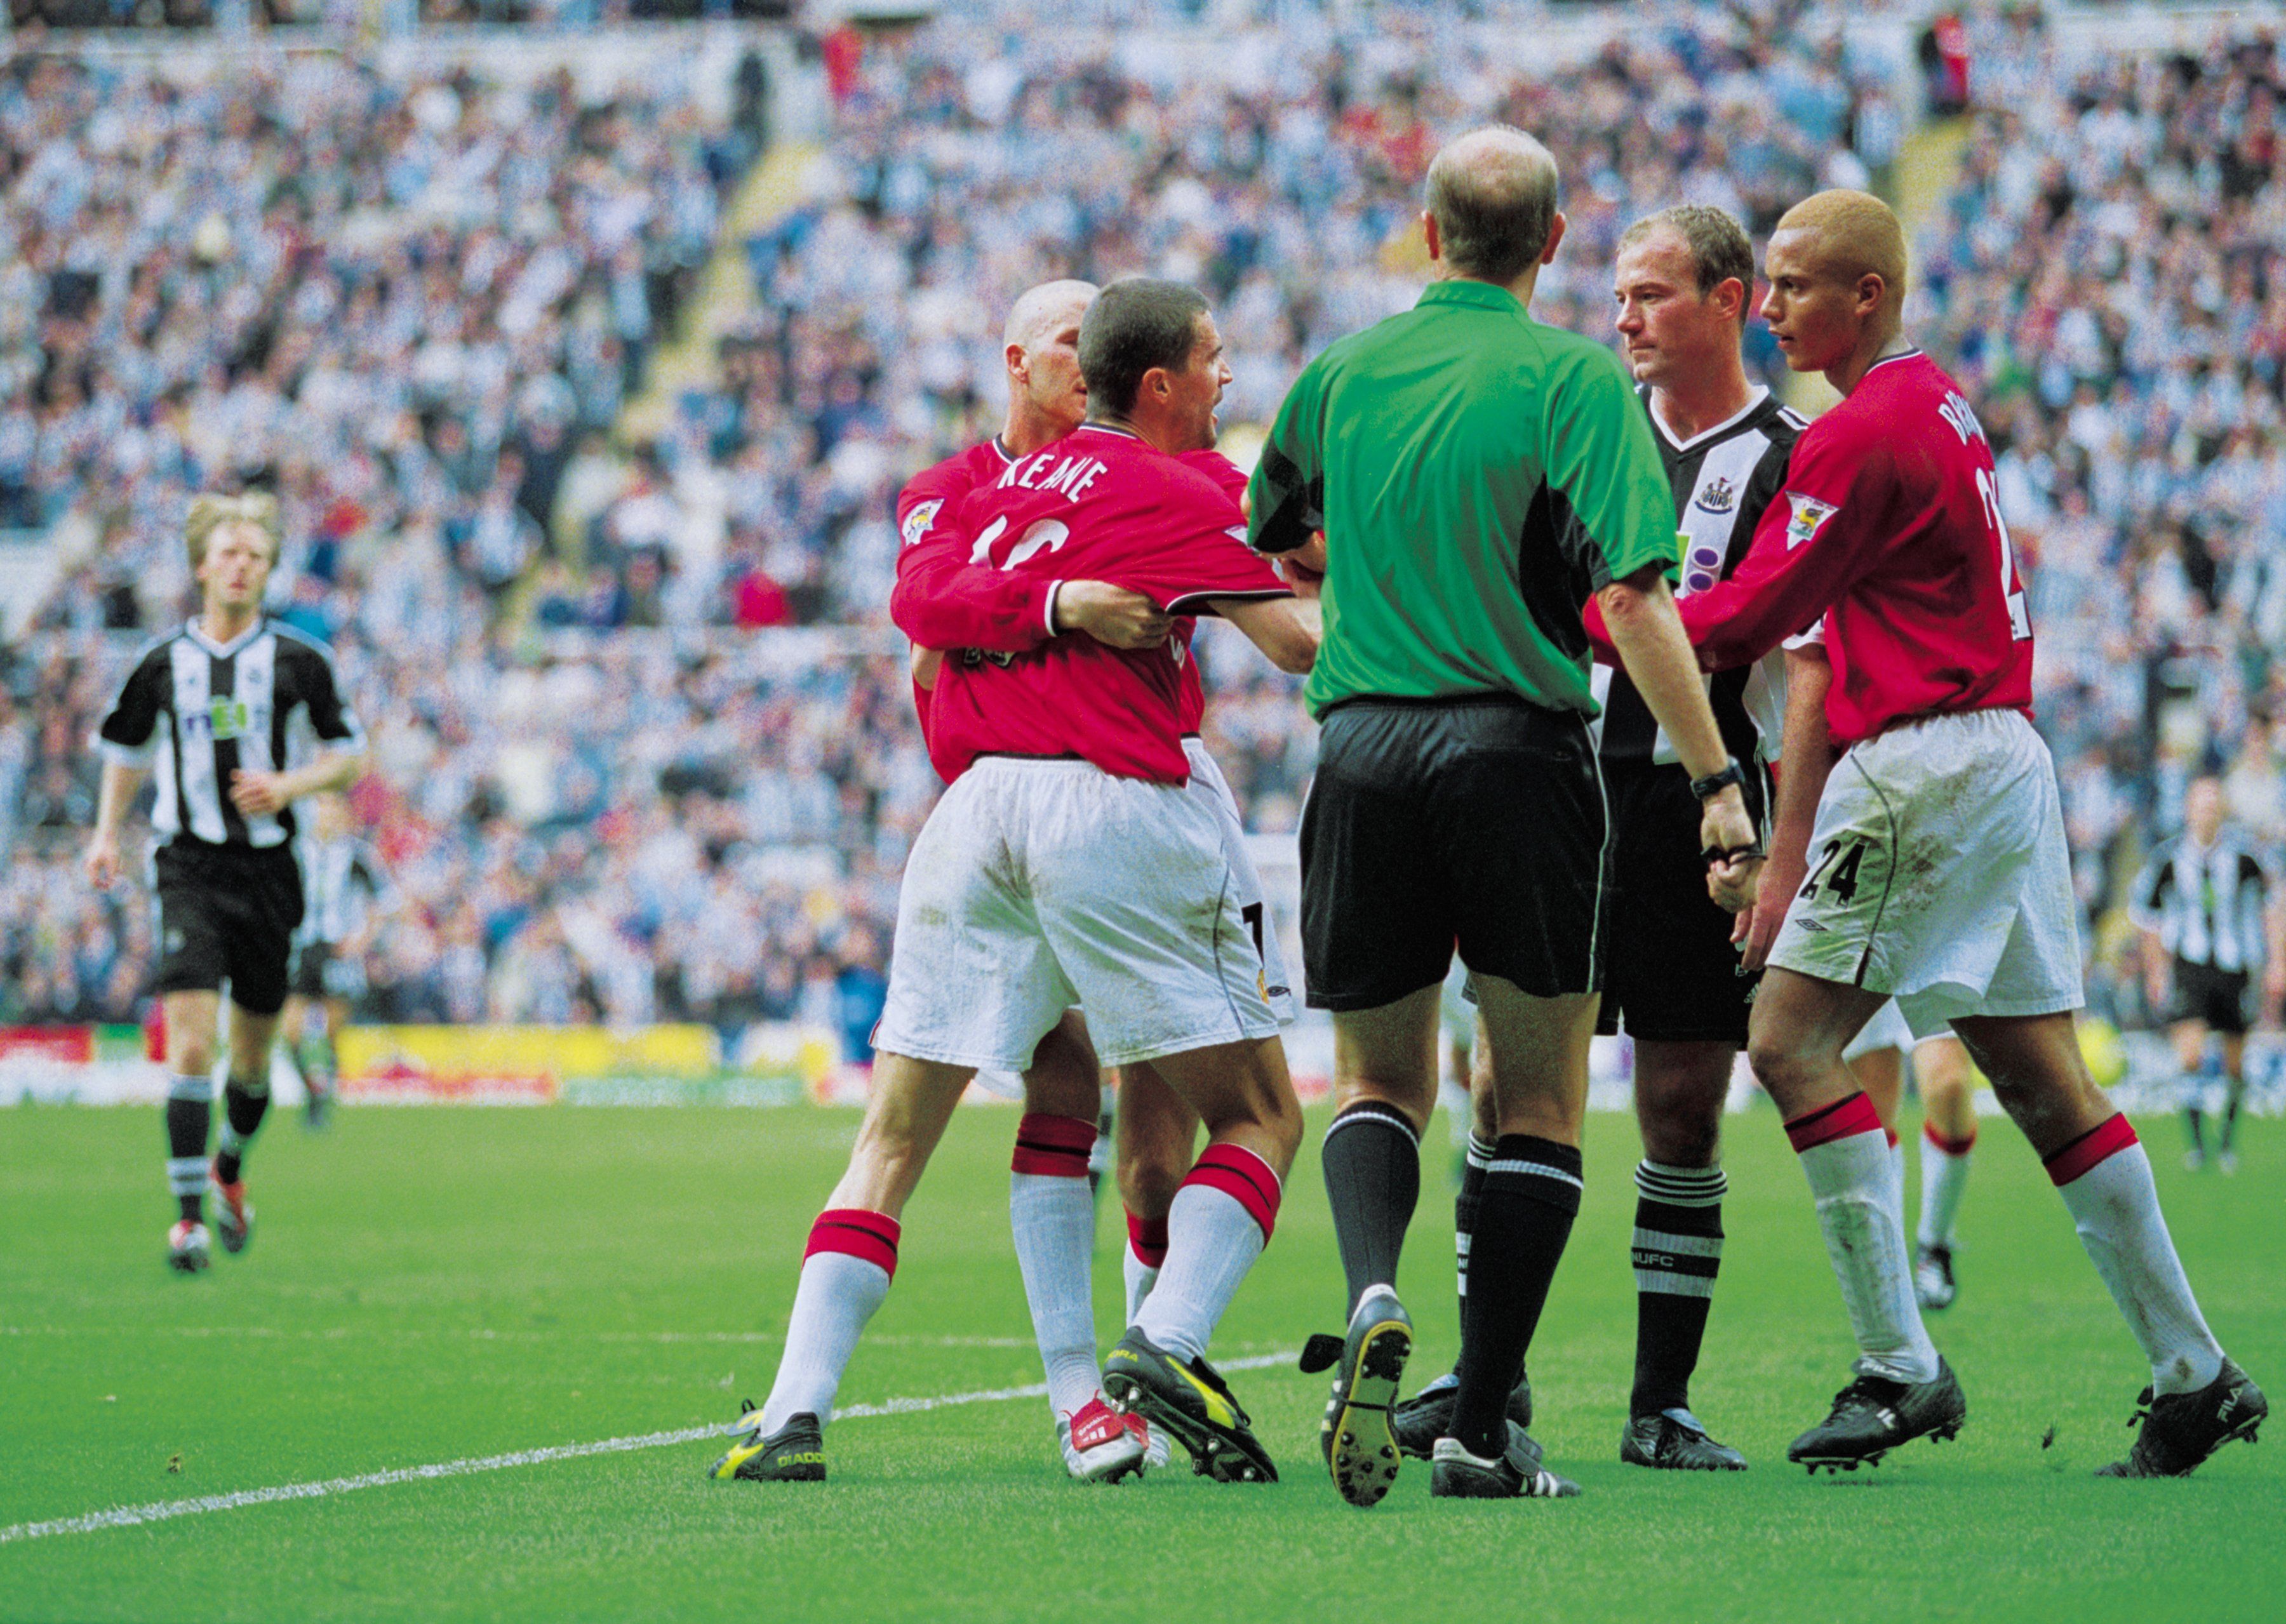 Roy Keane vs Alan Shearer